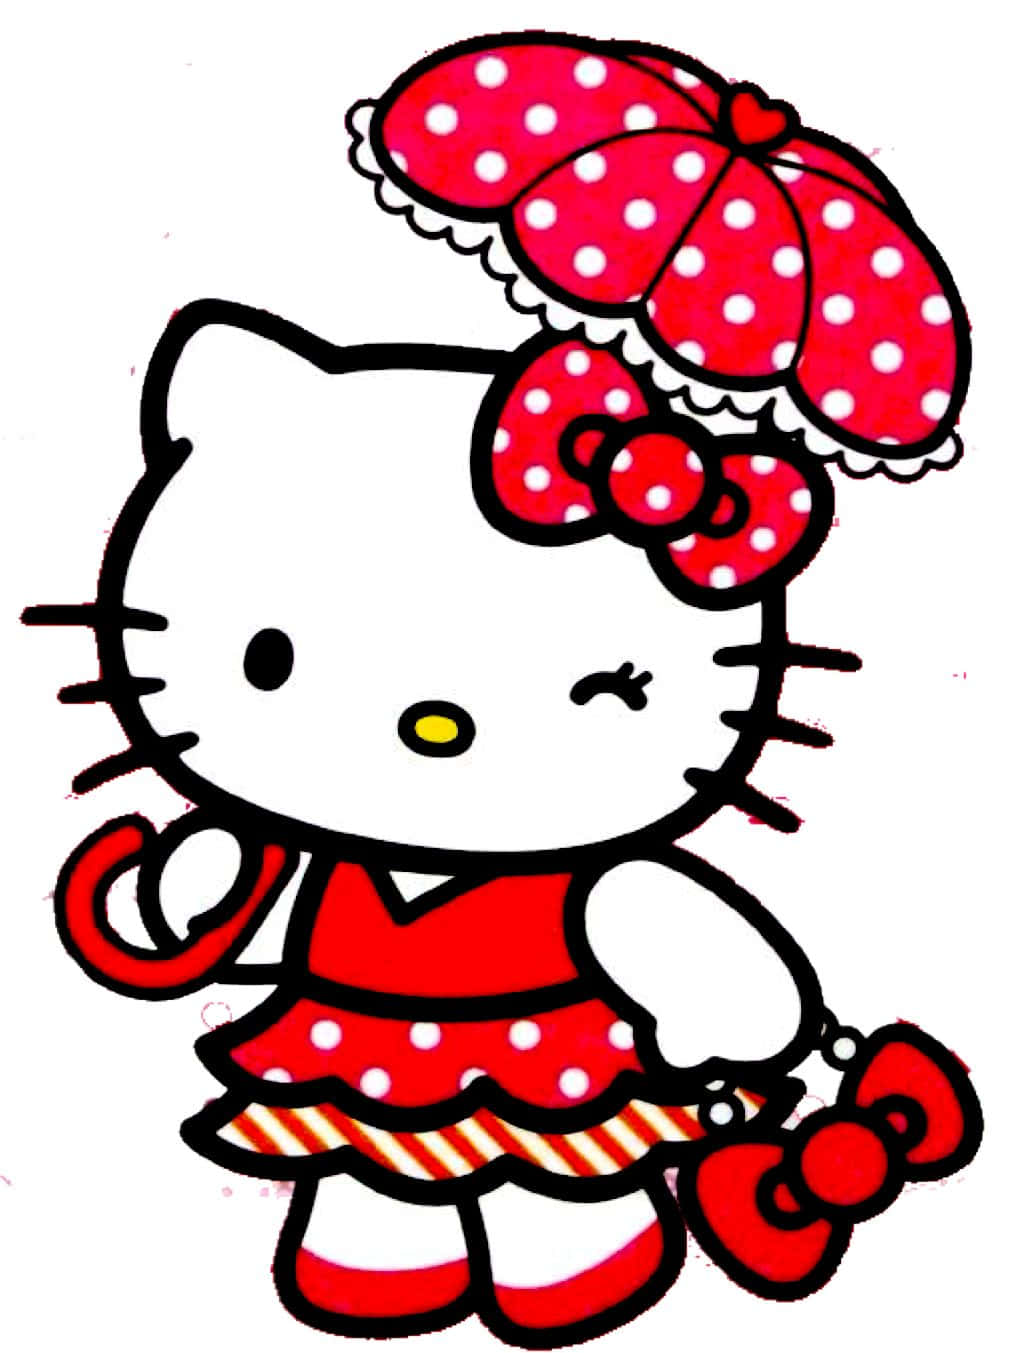 Aproveiteuma Xícara De Chá Com Hello Kitty!